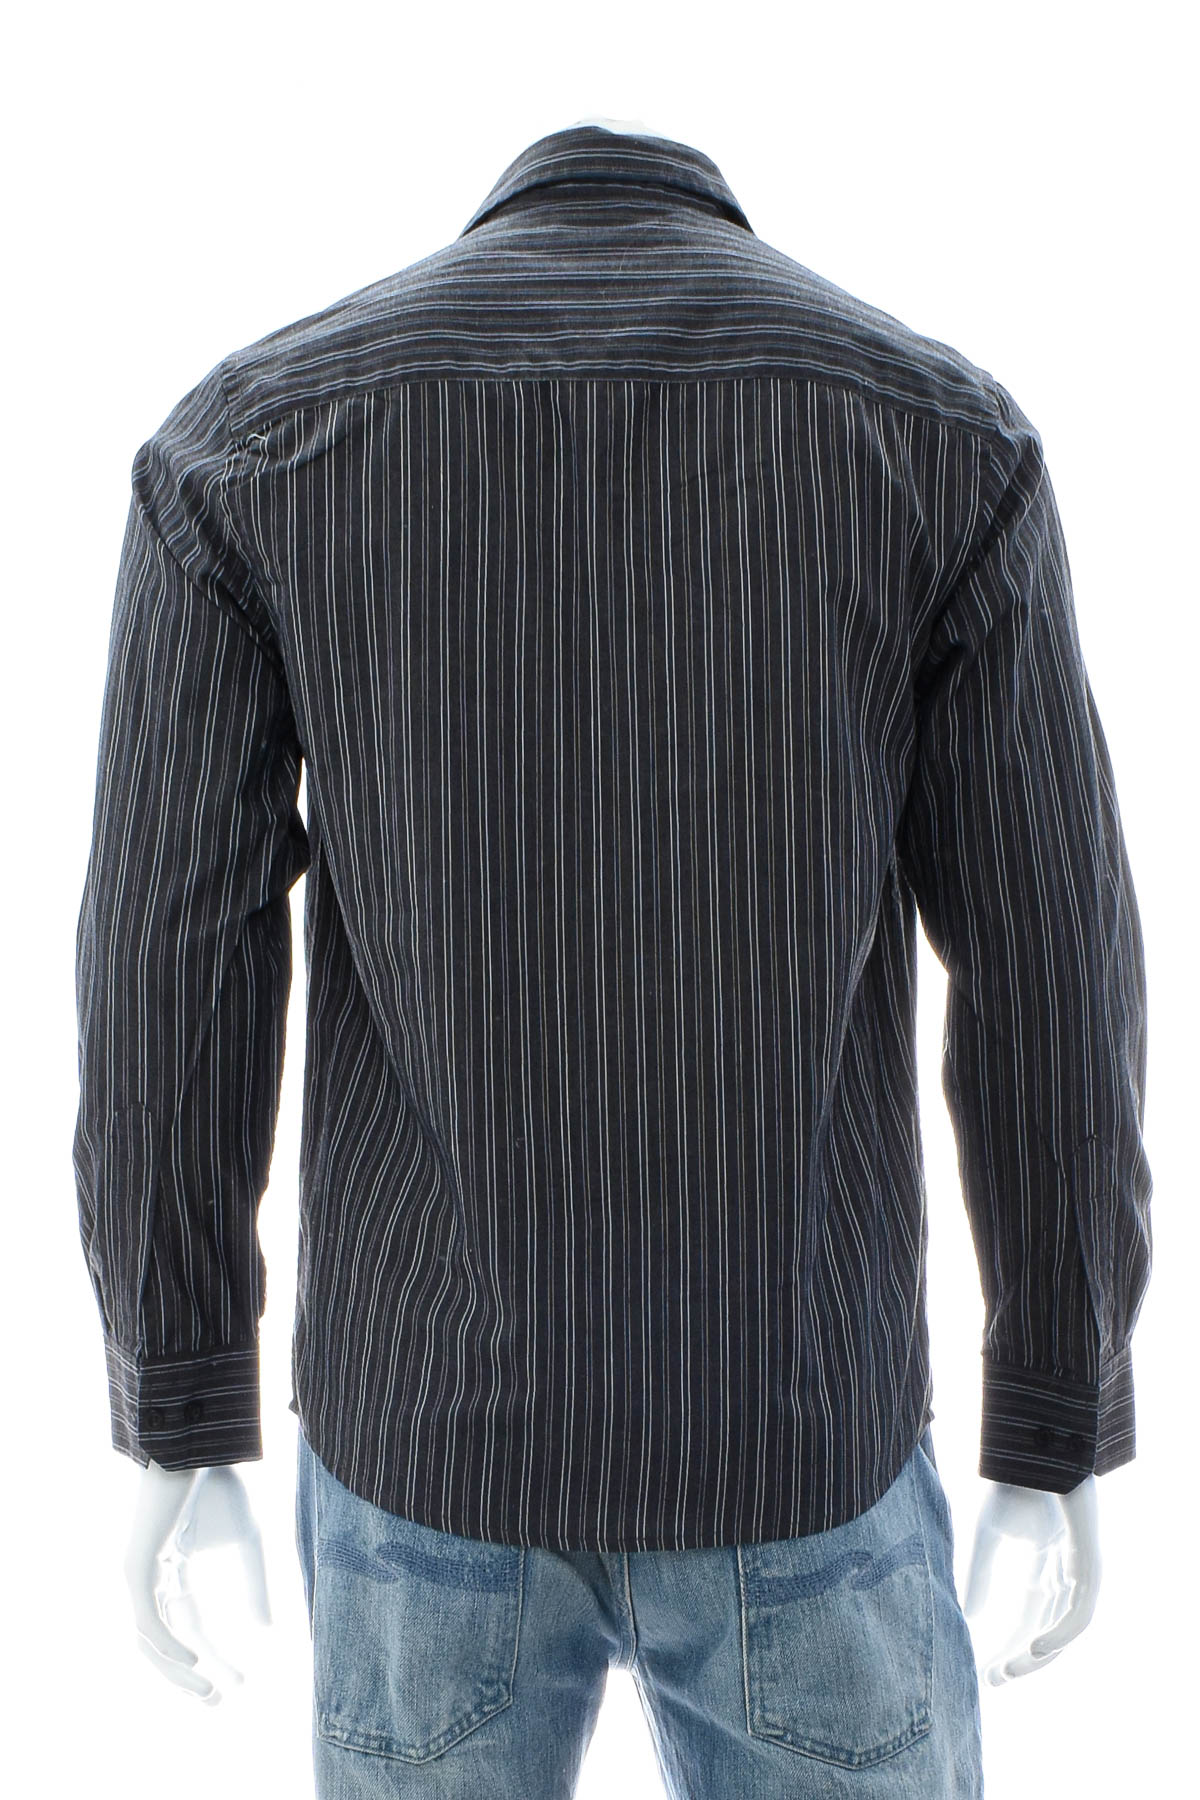 Ανδρικό πουκάμισο - Pierre Cardin - 1